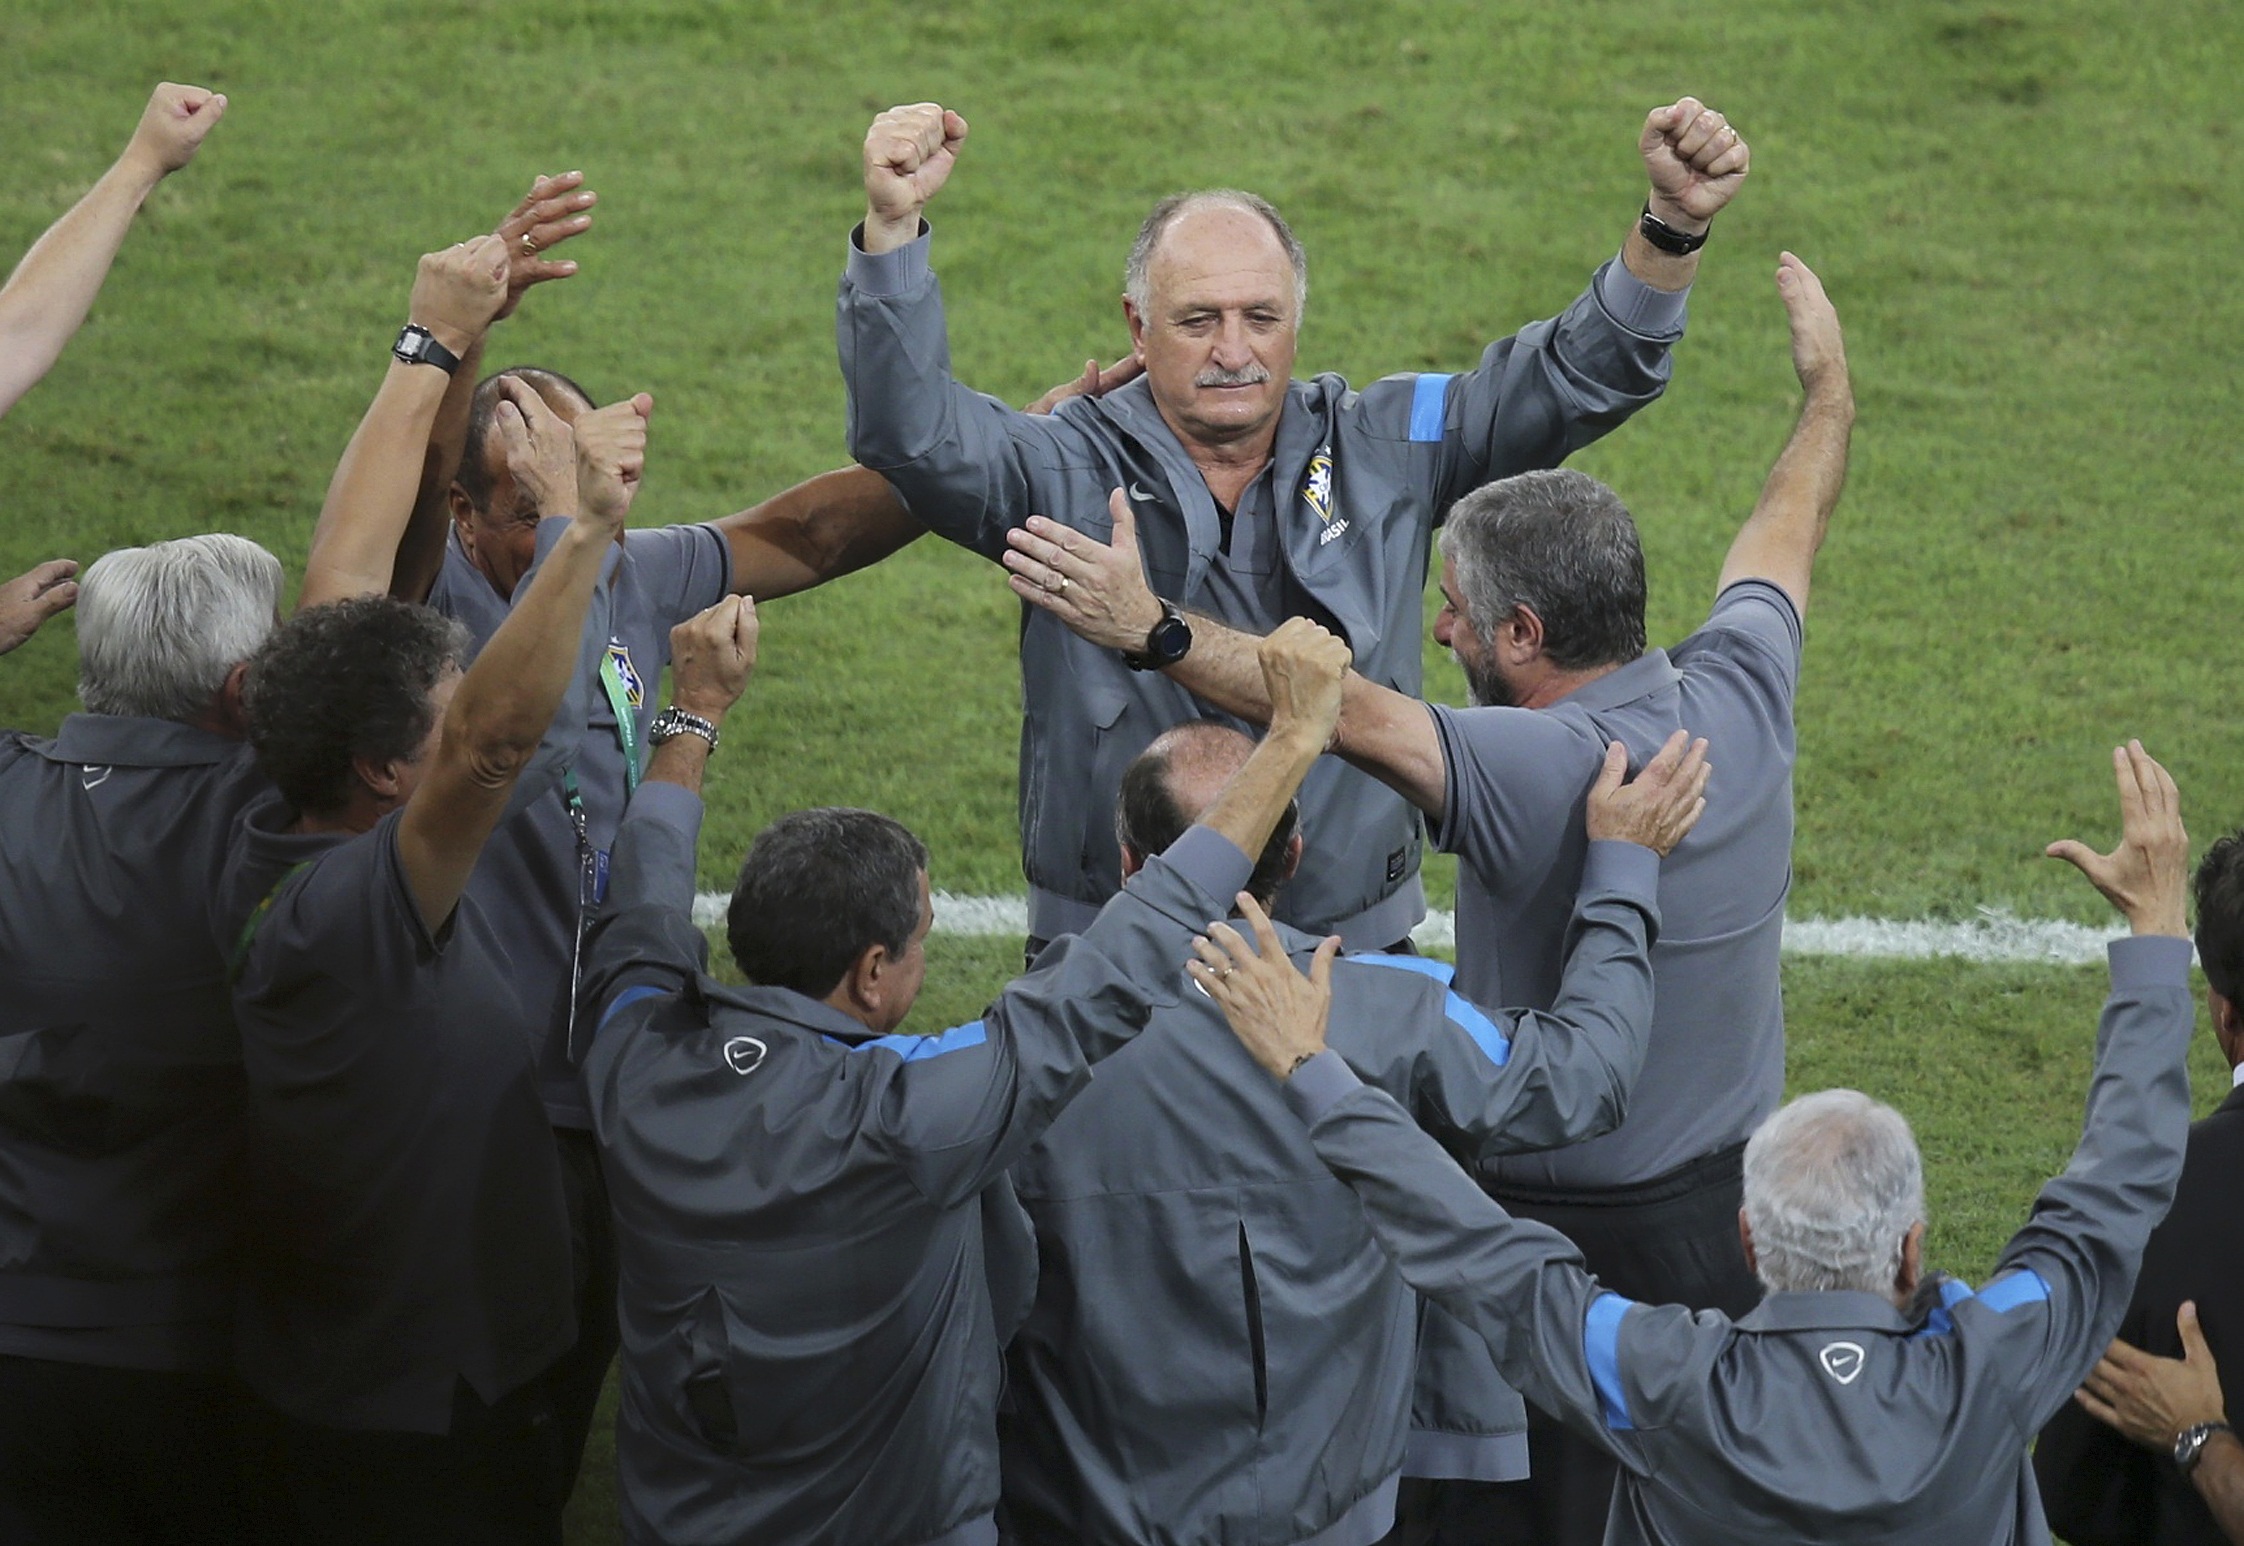 Brésil-Espagne - Scolari: "Cette conquête ouvre un chemin" 